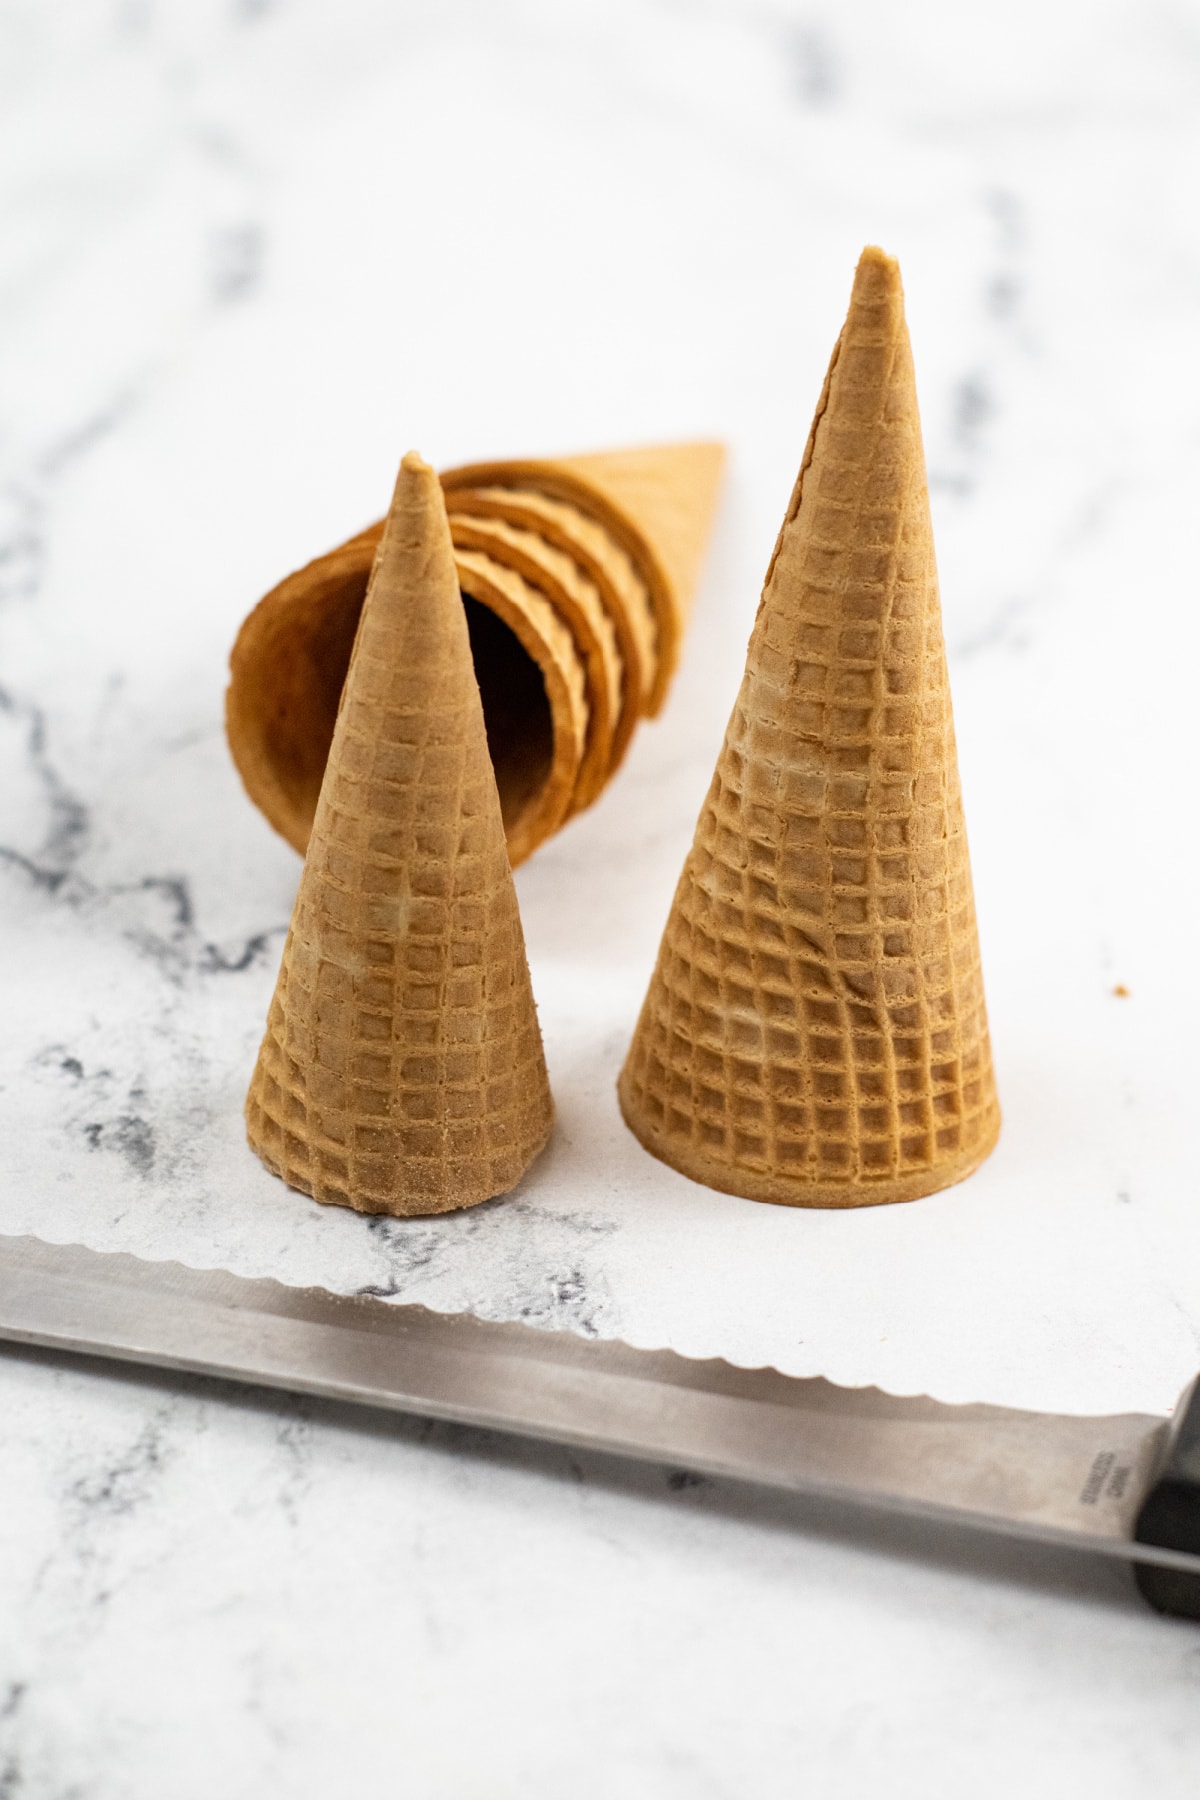 Sugar cones for Santa hat